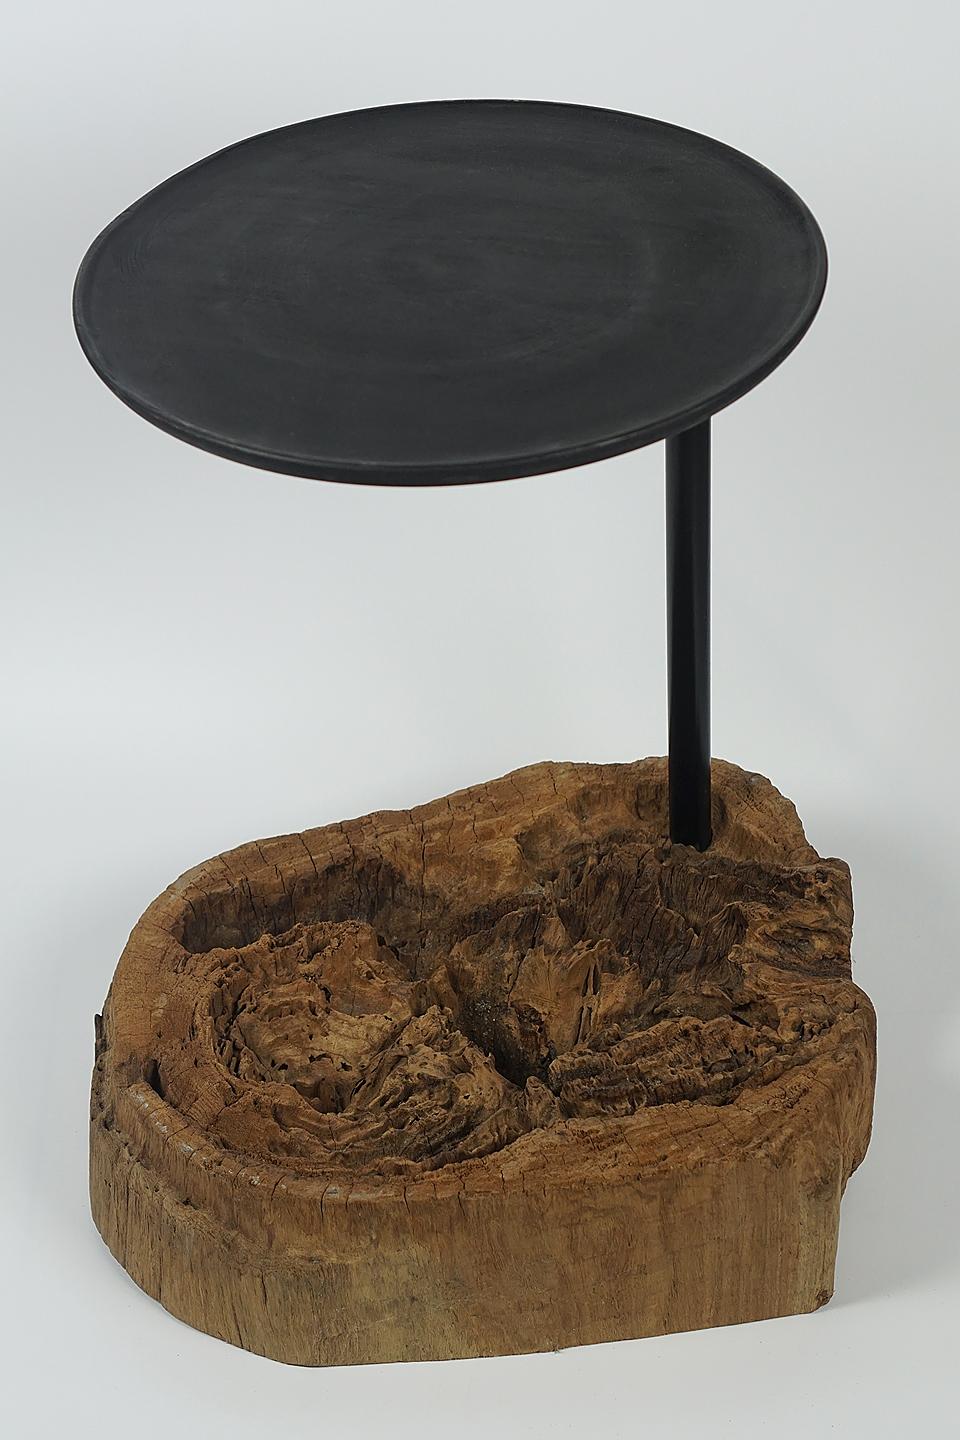 Table d'appoint en bois ancien érodé avec un manche en fer, plateau en bois de manguier
Production interne (Design/One).

Magnifique bois organique érodé, avec une plaque en bois de manguier sur un bâton en fer. 
Le pied était fait de vieux bois